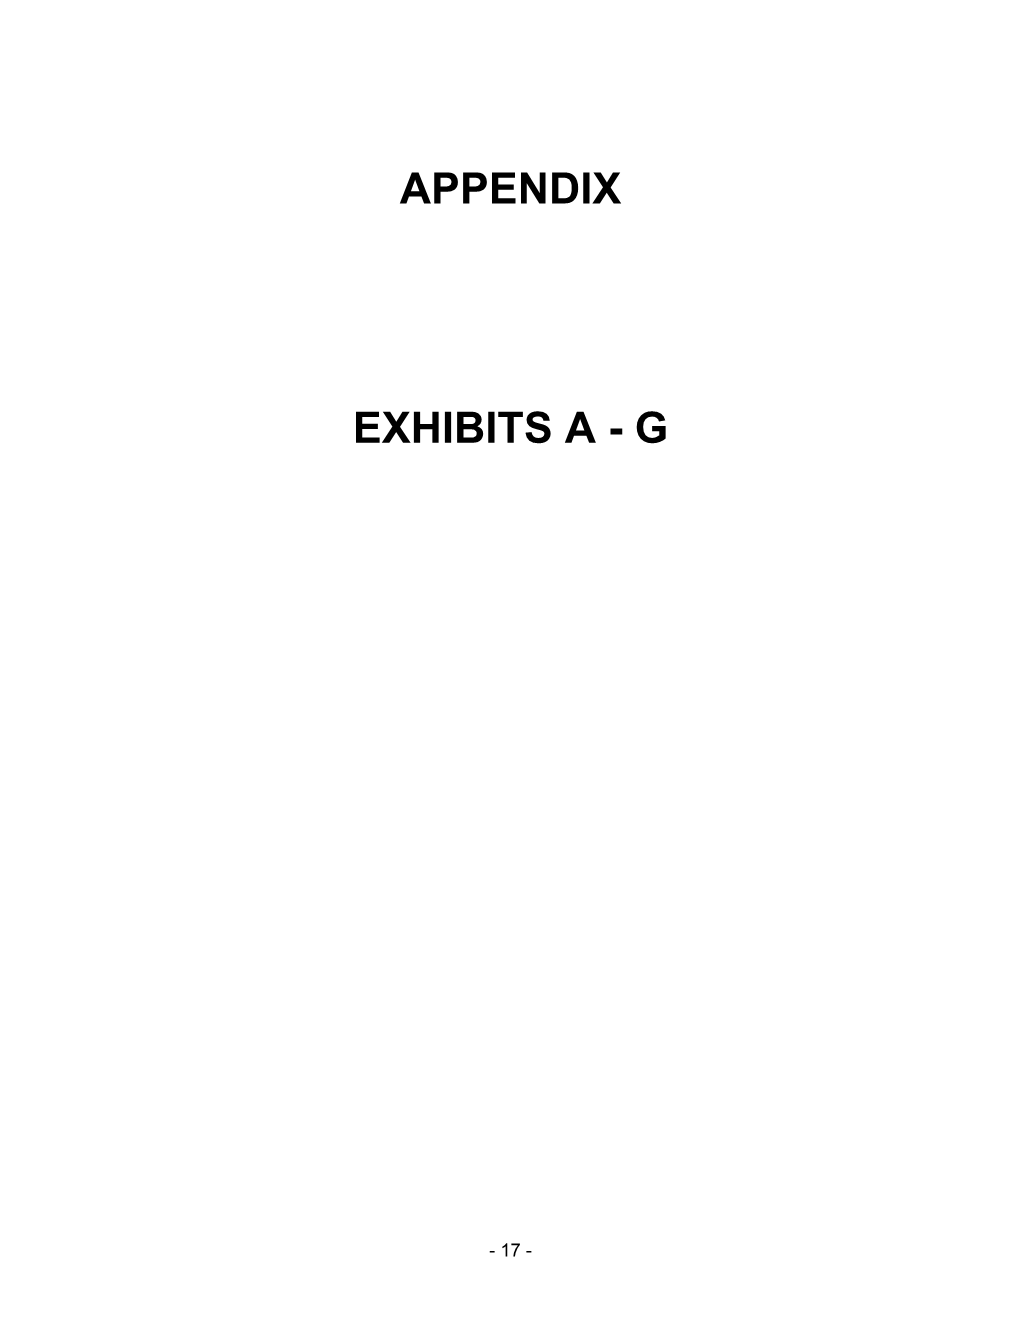 Appendix Exhibits A